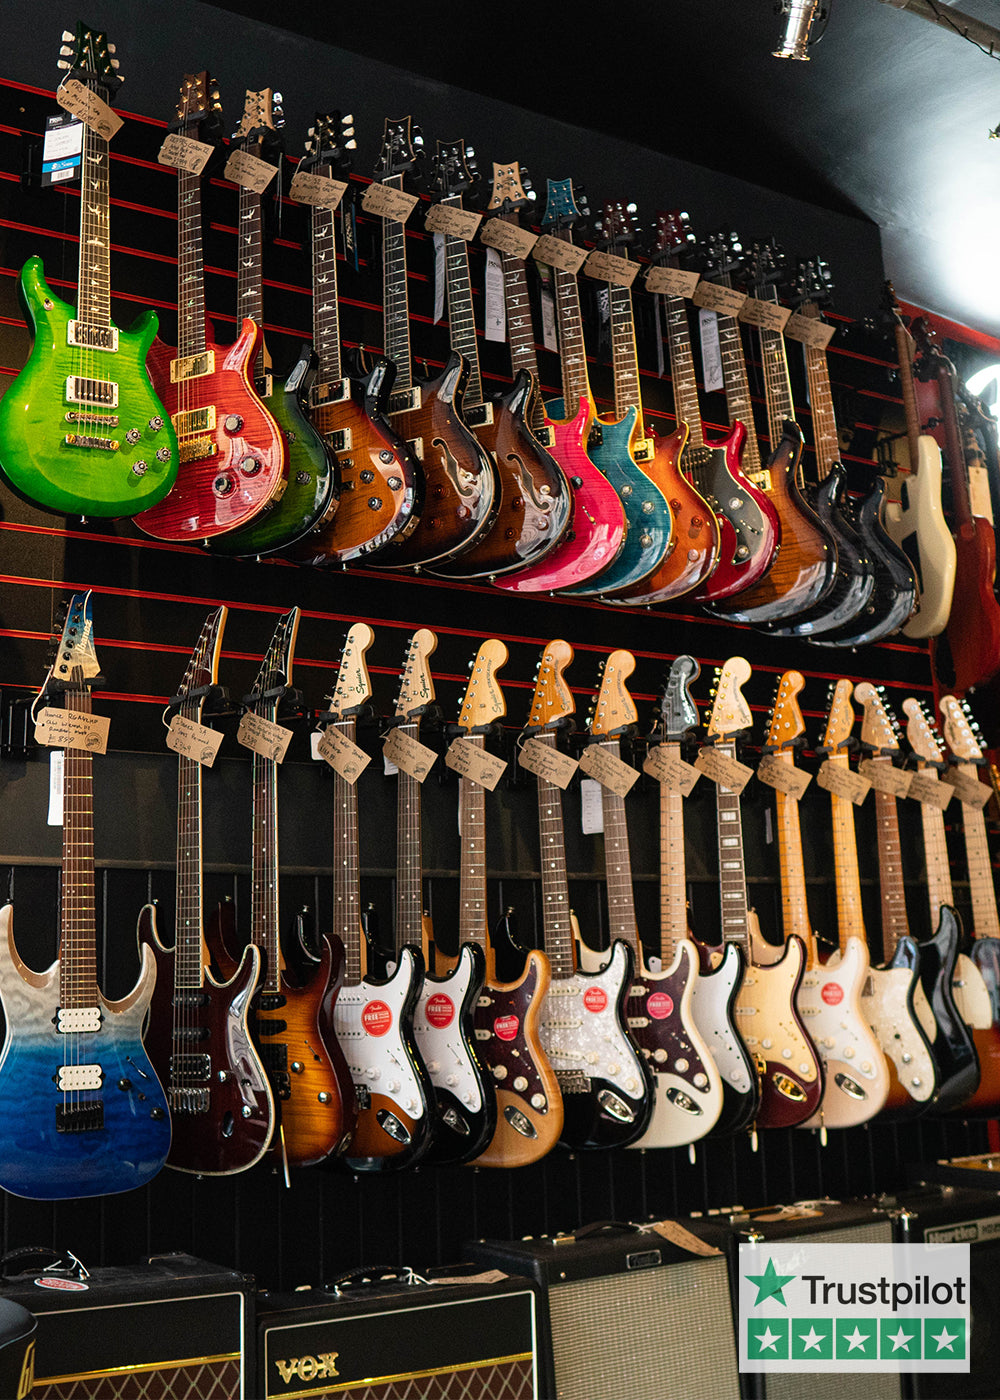 Guitarbitz Music Store | & Instrument Store